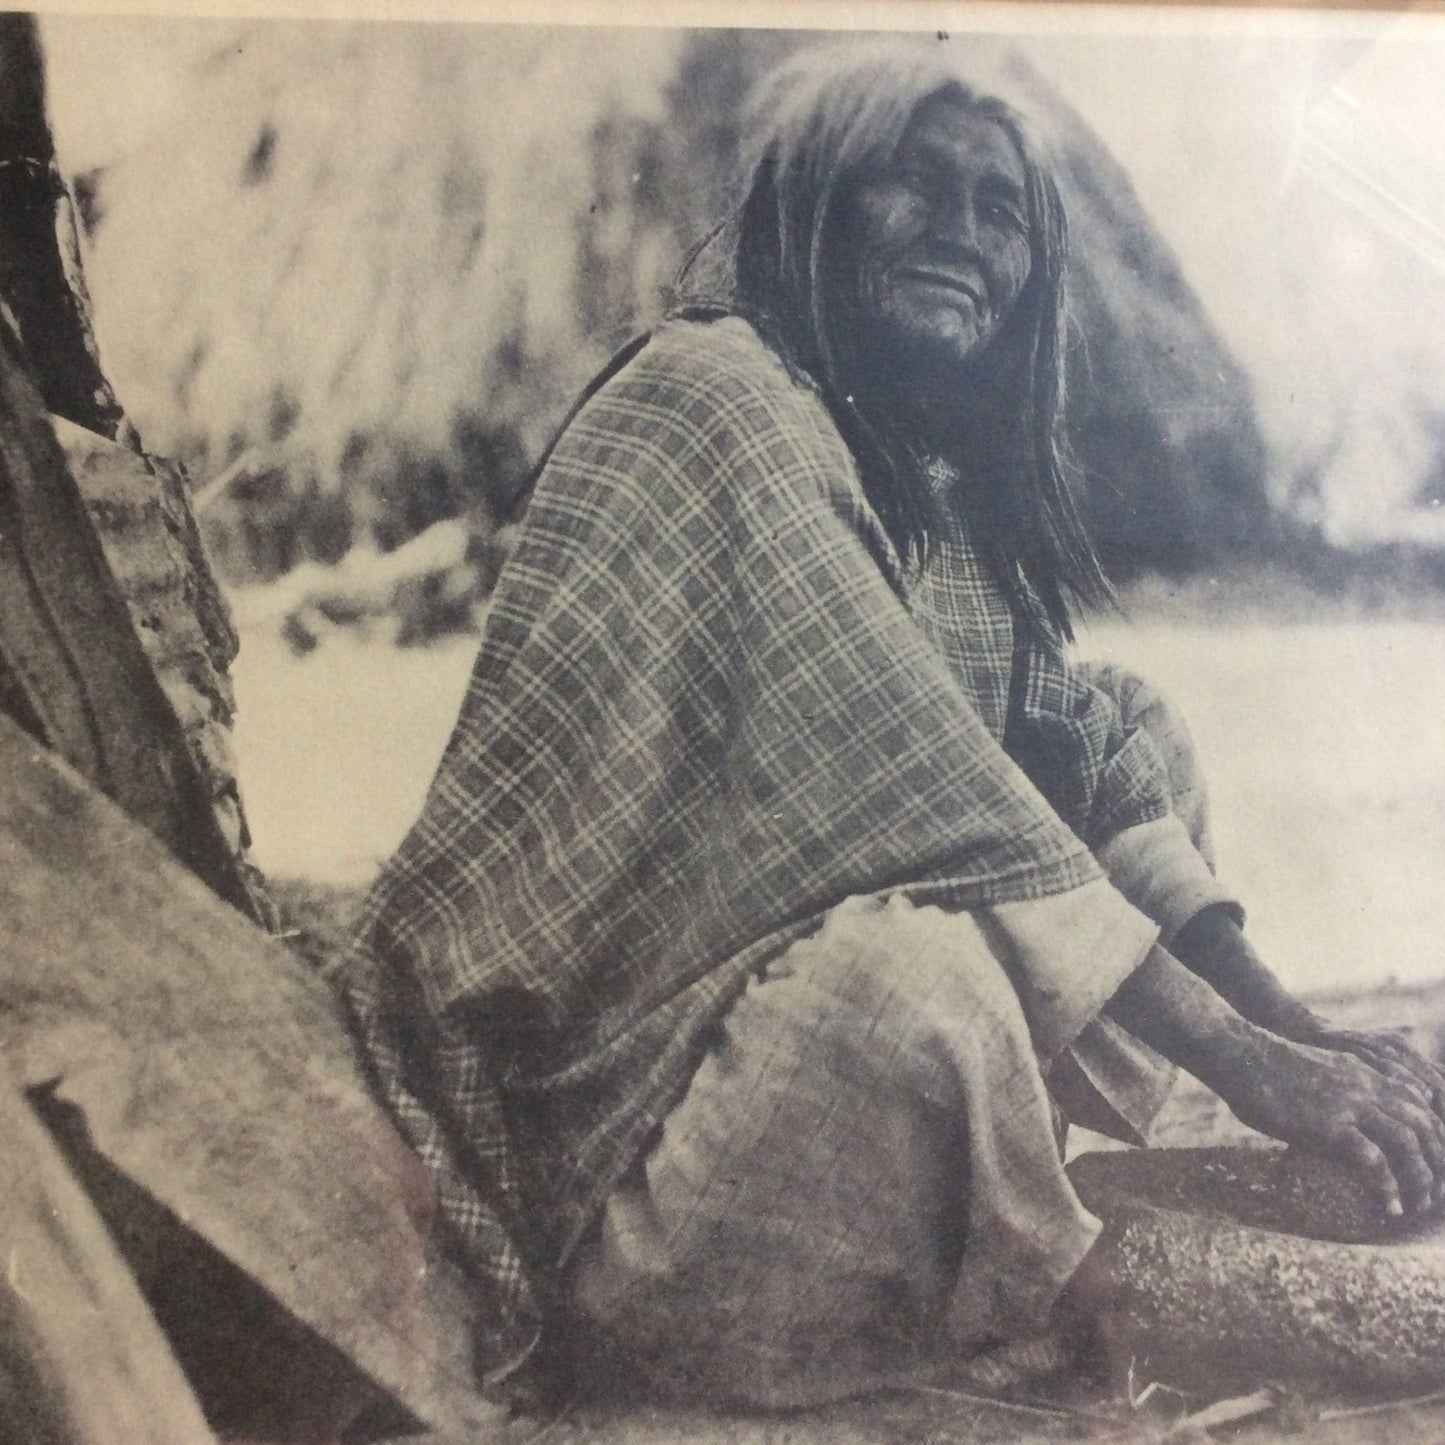 Apache Woman Print B&W / Mixed / Vintage 1970s